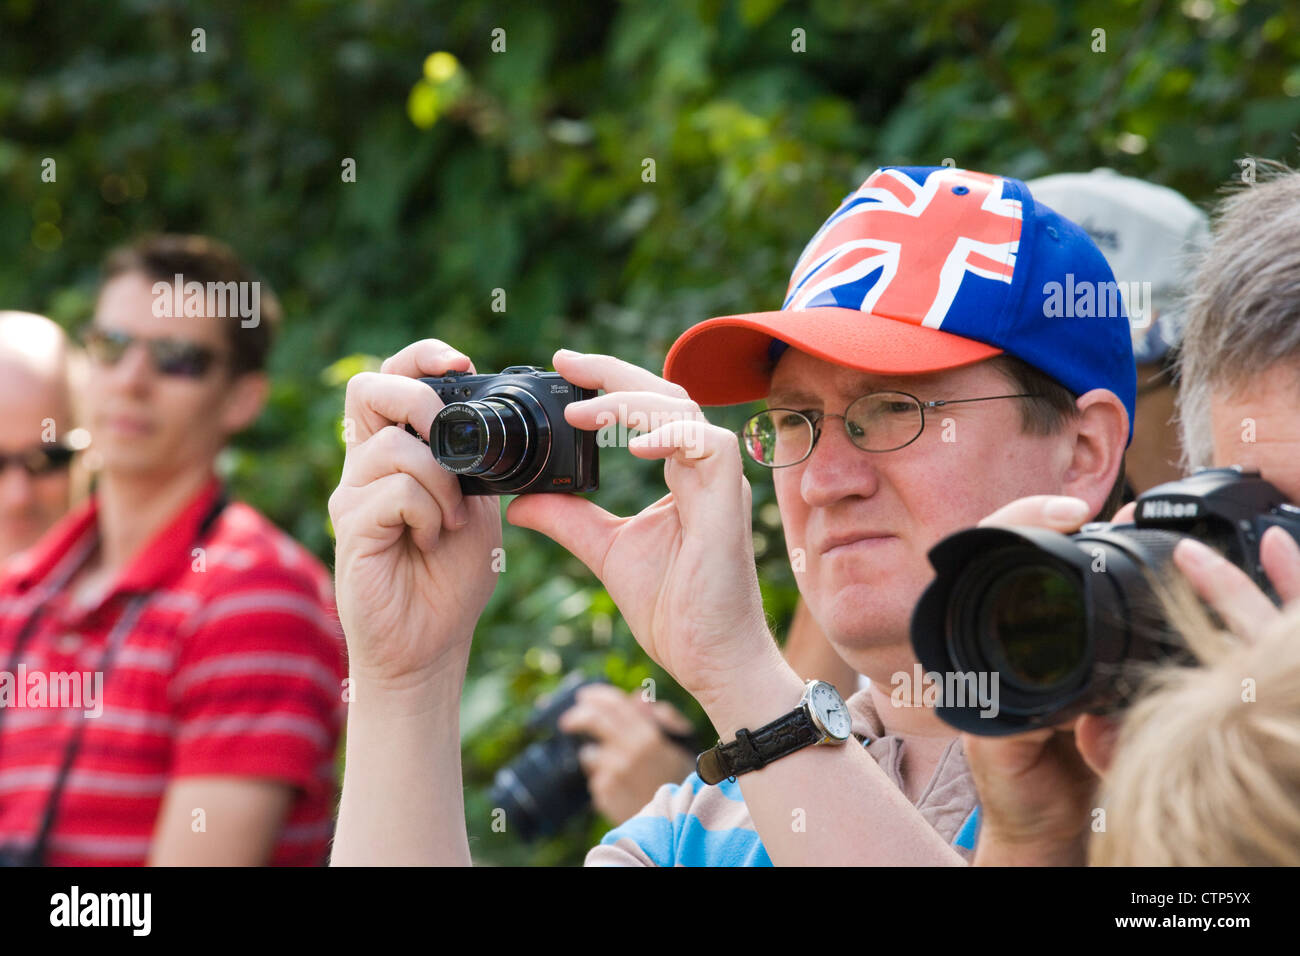 Les Jeux Olympiques de 2012 à Londres. Les spectateurs de prendre des photos de course pour hommes à Ripley, Surrey. Banque D'Images